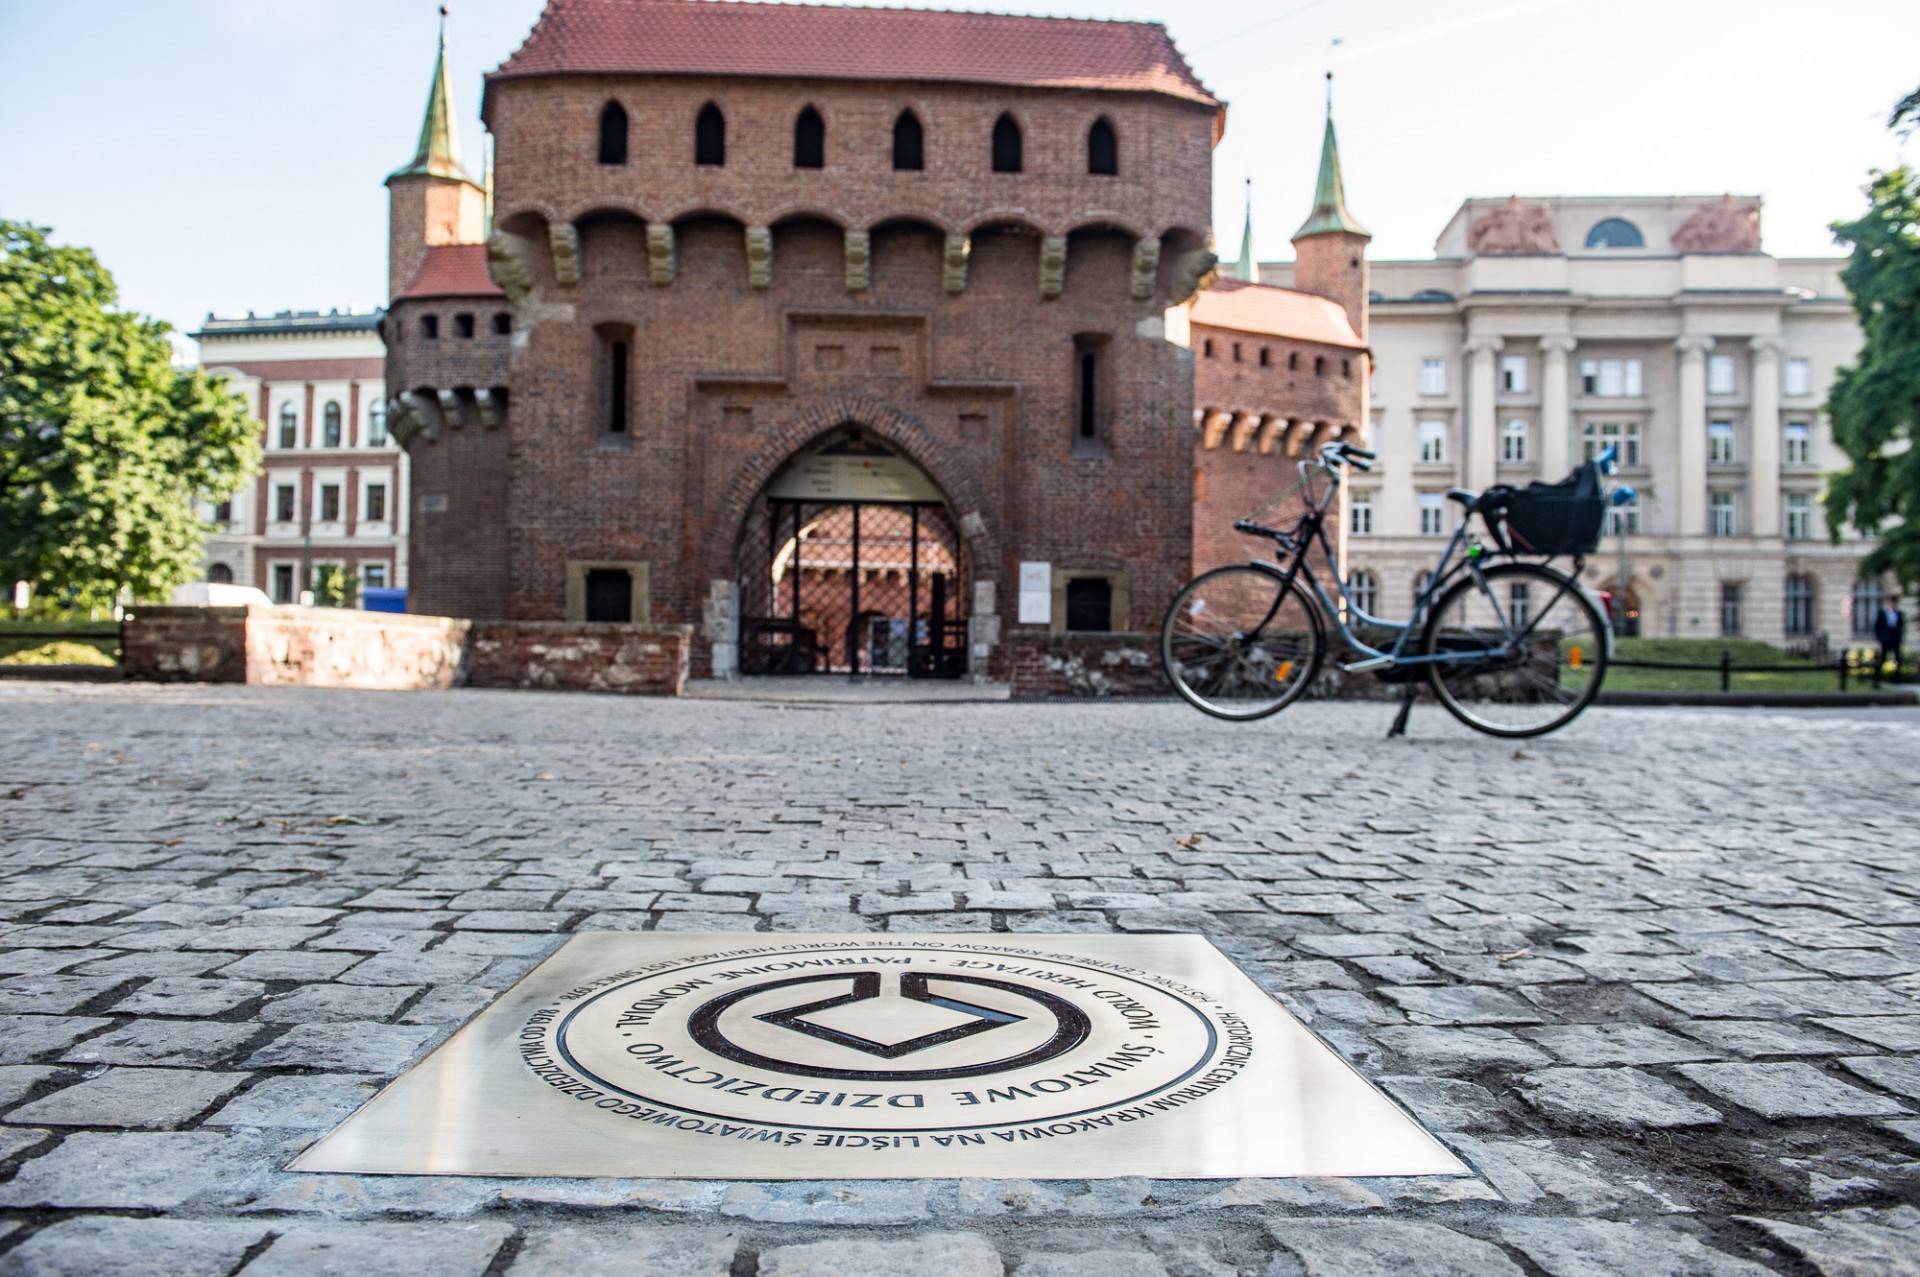 Ta tablica ma przypominać o wyjątkowości Krakowa, na pamiątkę historycznego wpisu